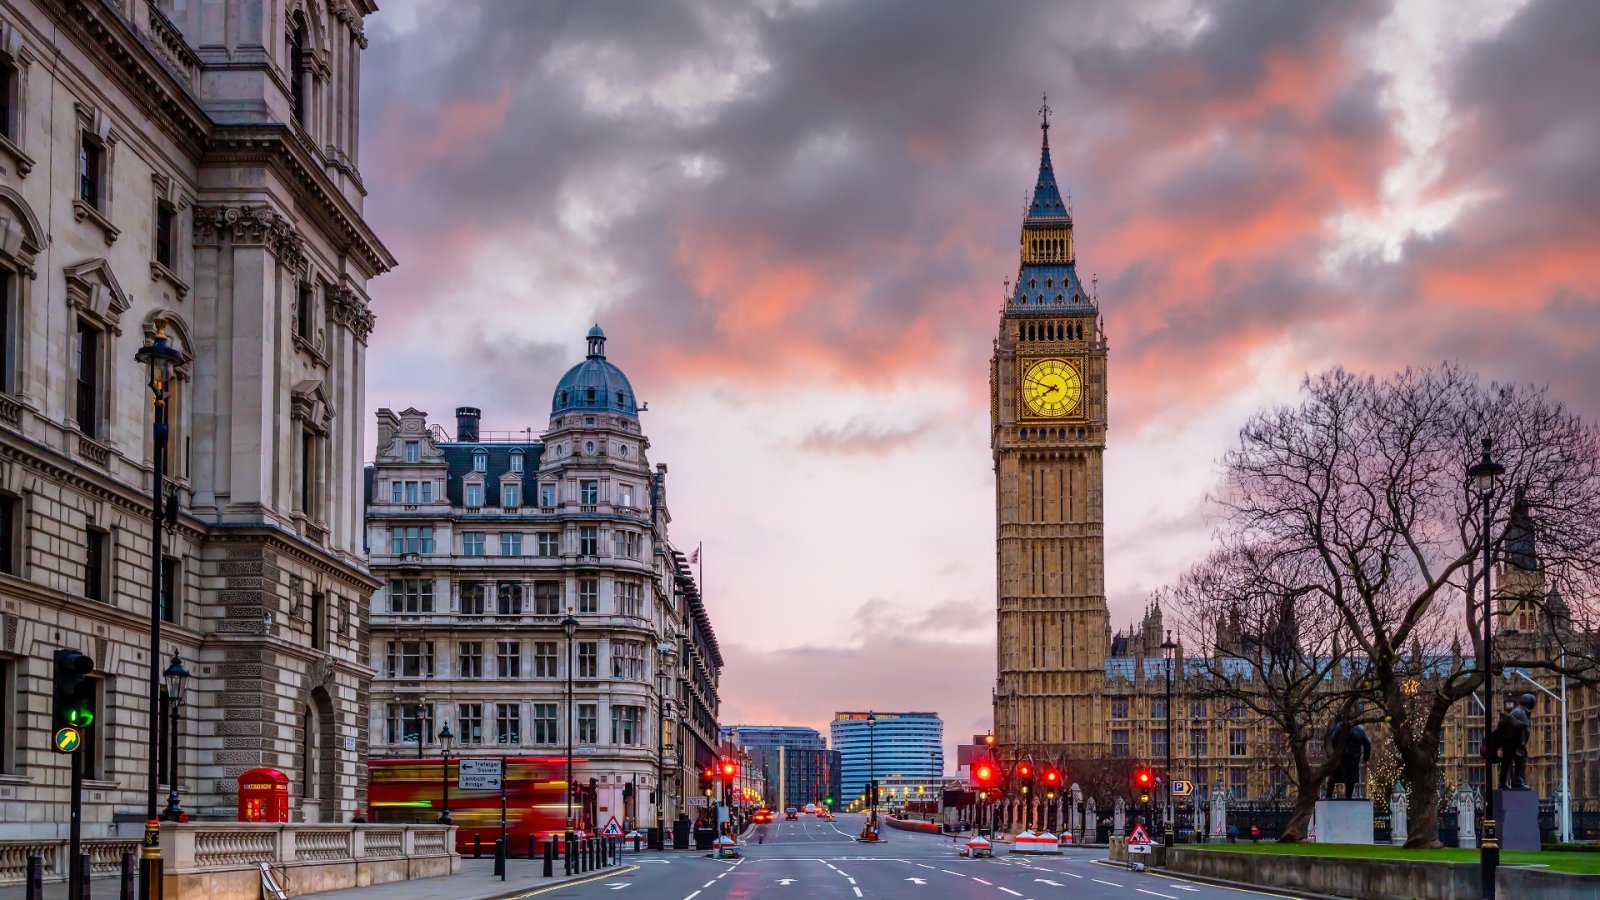 Procurando coisas gratuitas para fazer em Londres? Aqui estão 10 atividades gratuitas na capital do Reino Unido